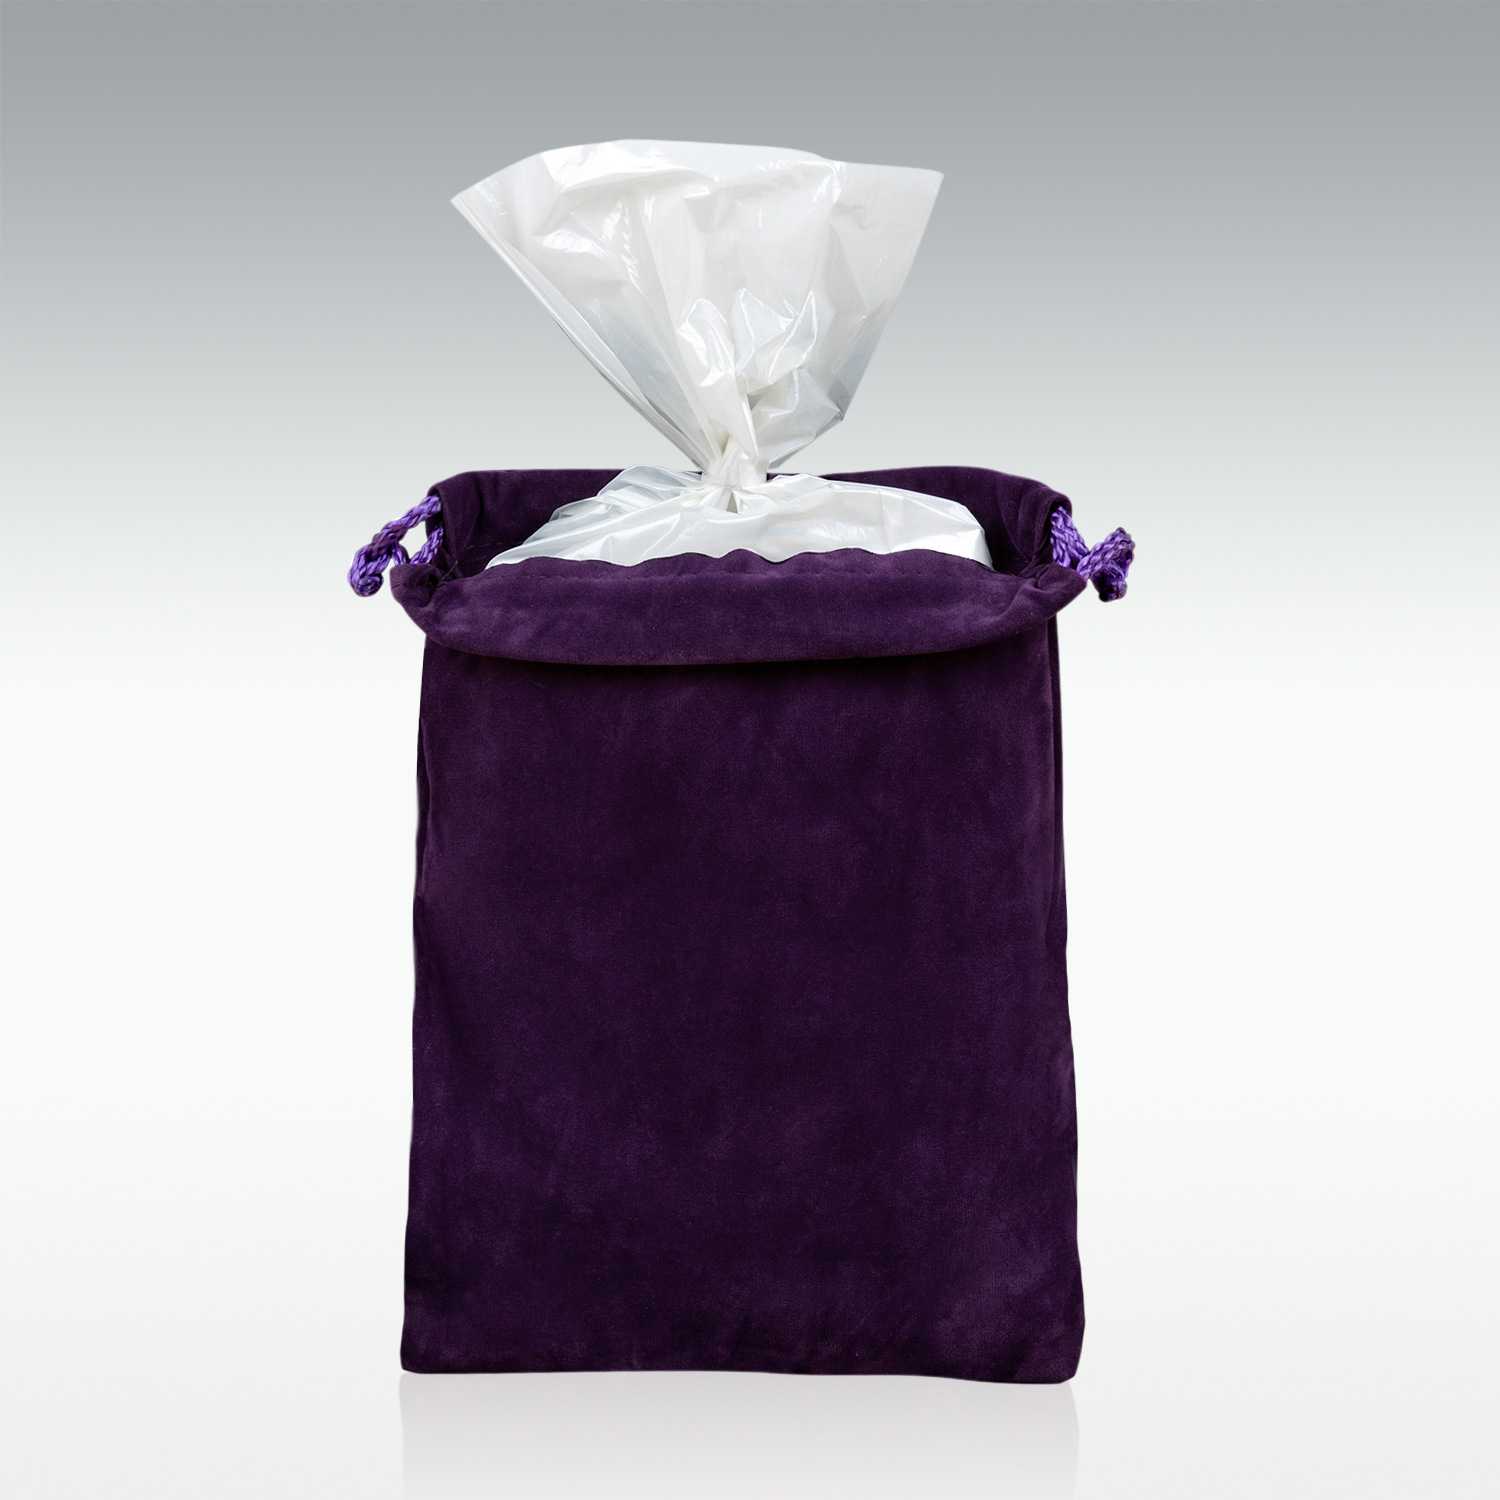 Premium Quality Velvet Urn Bag with Fancy Drawstring Closure (Burgundy) -  Burgundy Velvet Bag - Drawstring Velvet Bag -